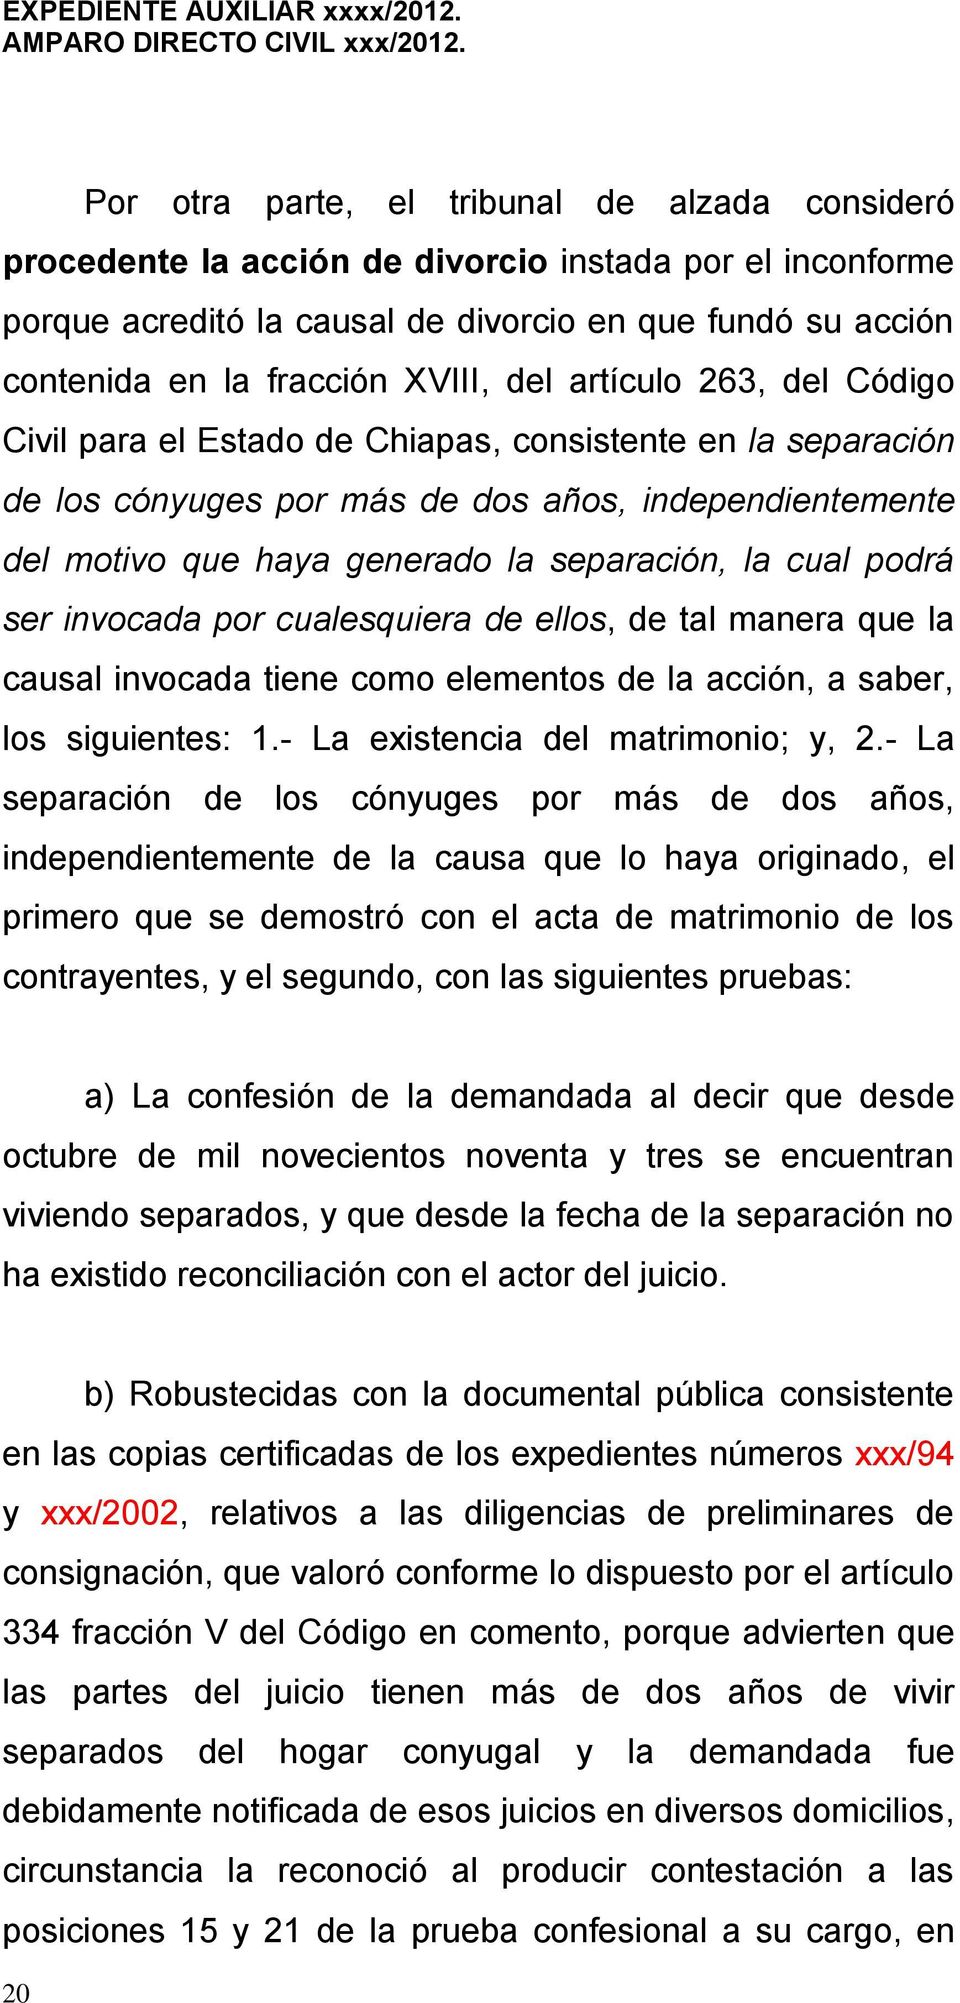 del artículo 263, del Código Civil para el Estado de Chiapas, consistente en la separación de los cónyuges por más de dos años, independientemente del motivo que haya generado la separación, la cual